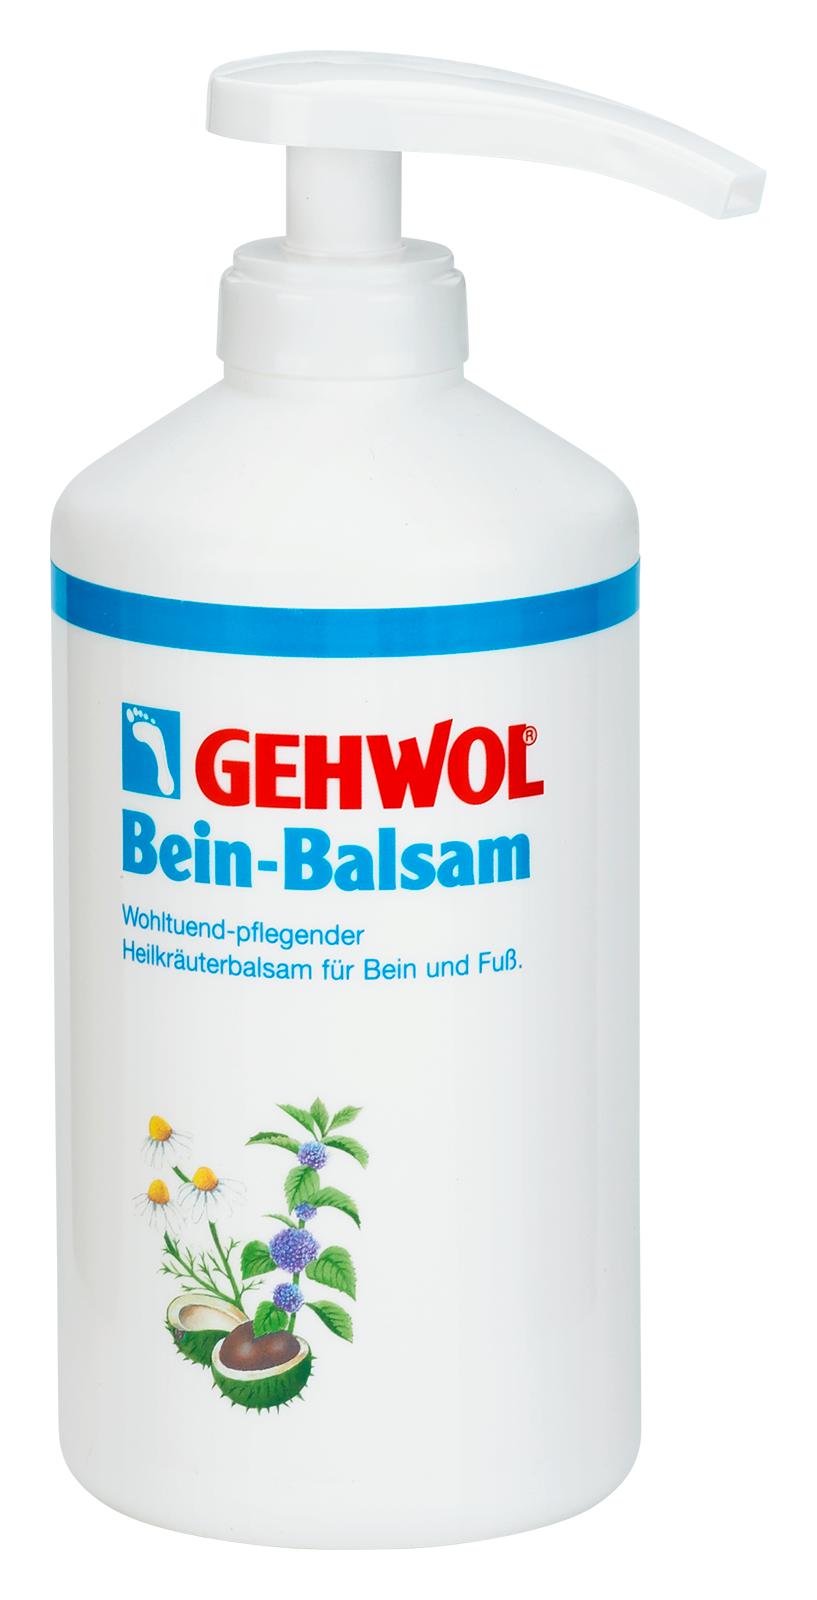 GEHWOL Bein-Balsam 500 ml